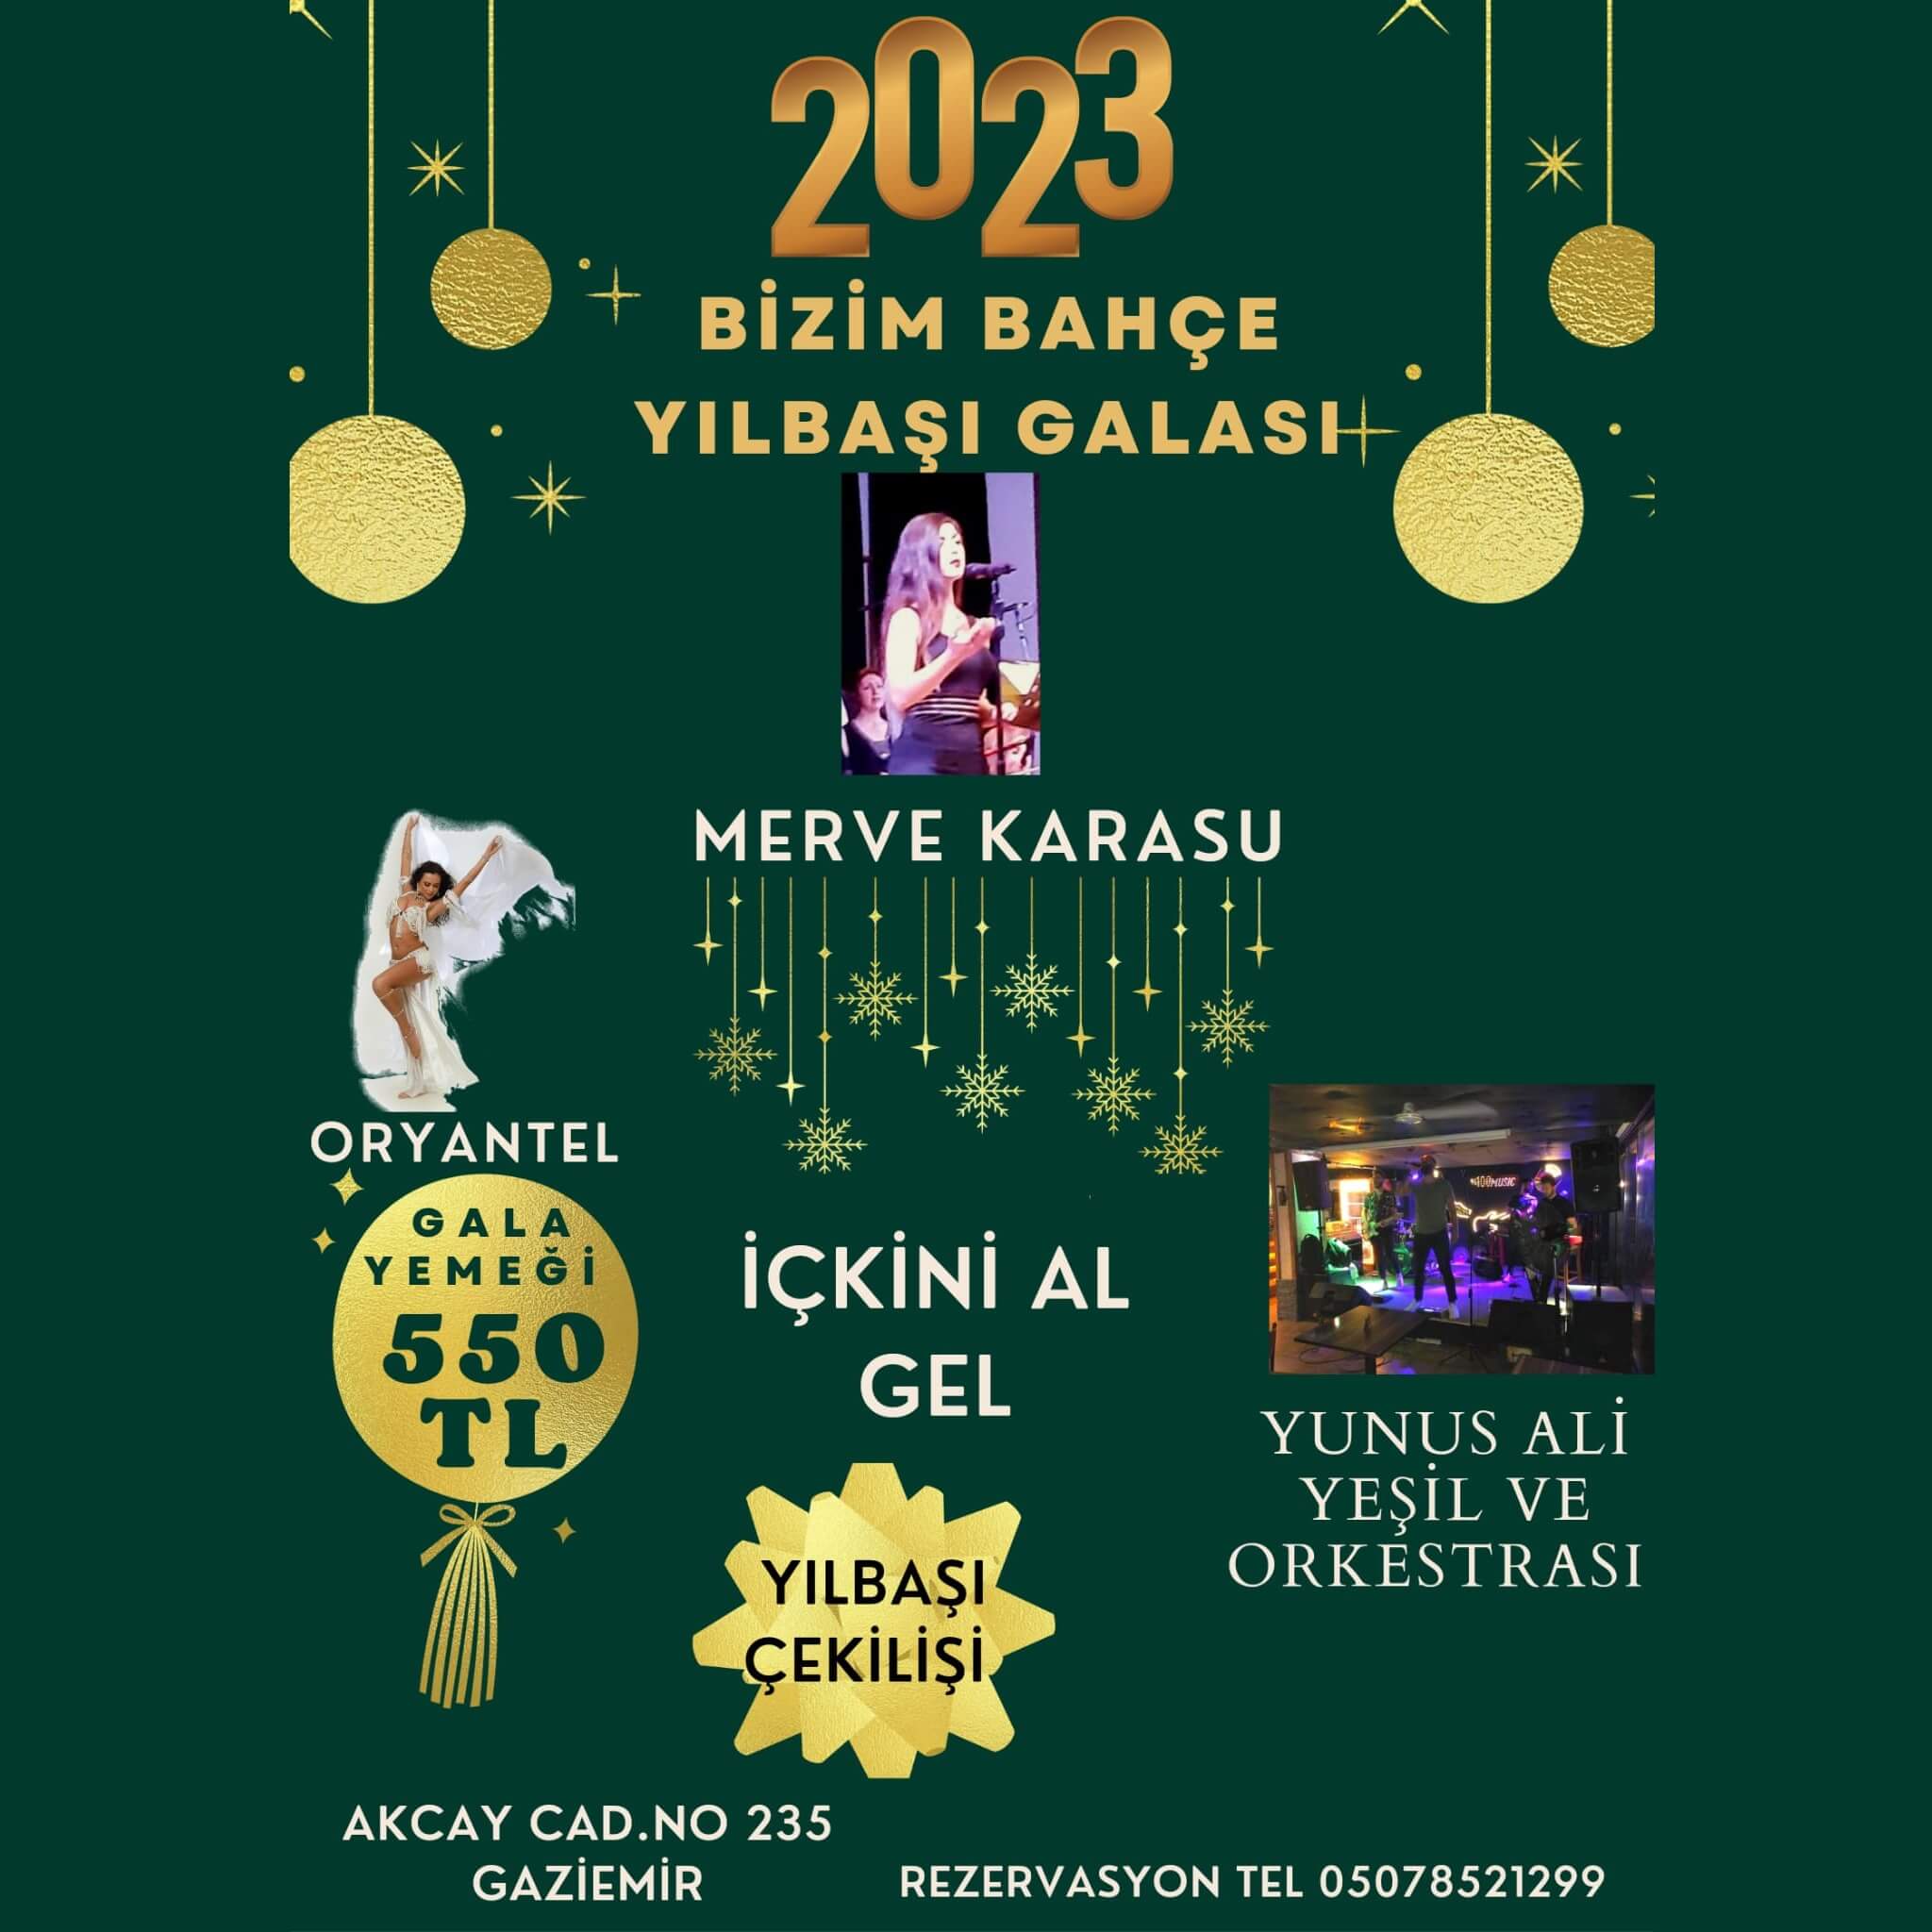 Bizim Bahçe İzmir Yılbaşı Programı 2023